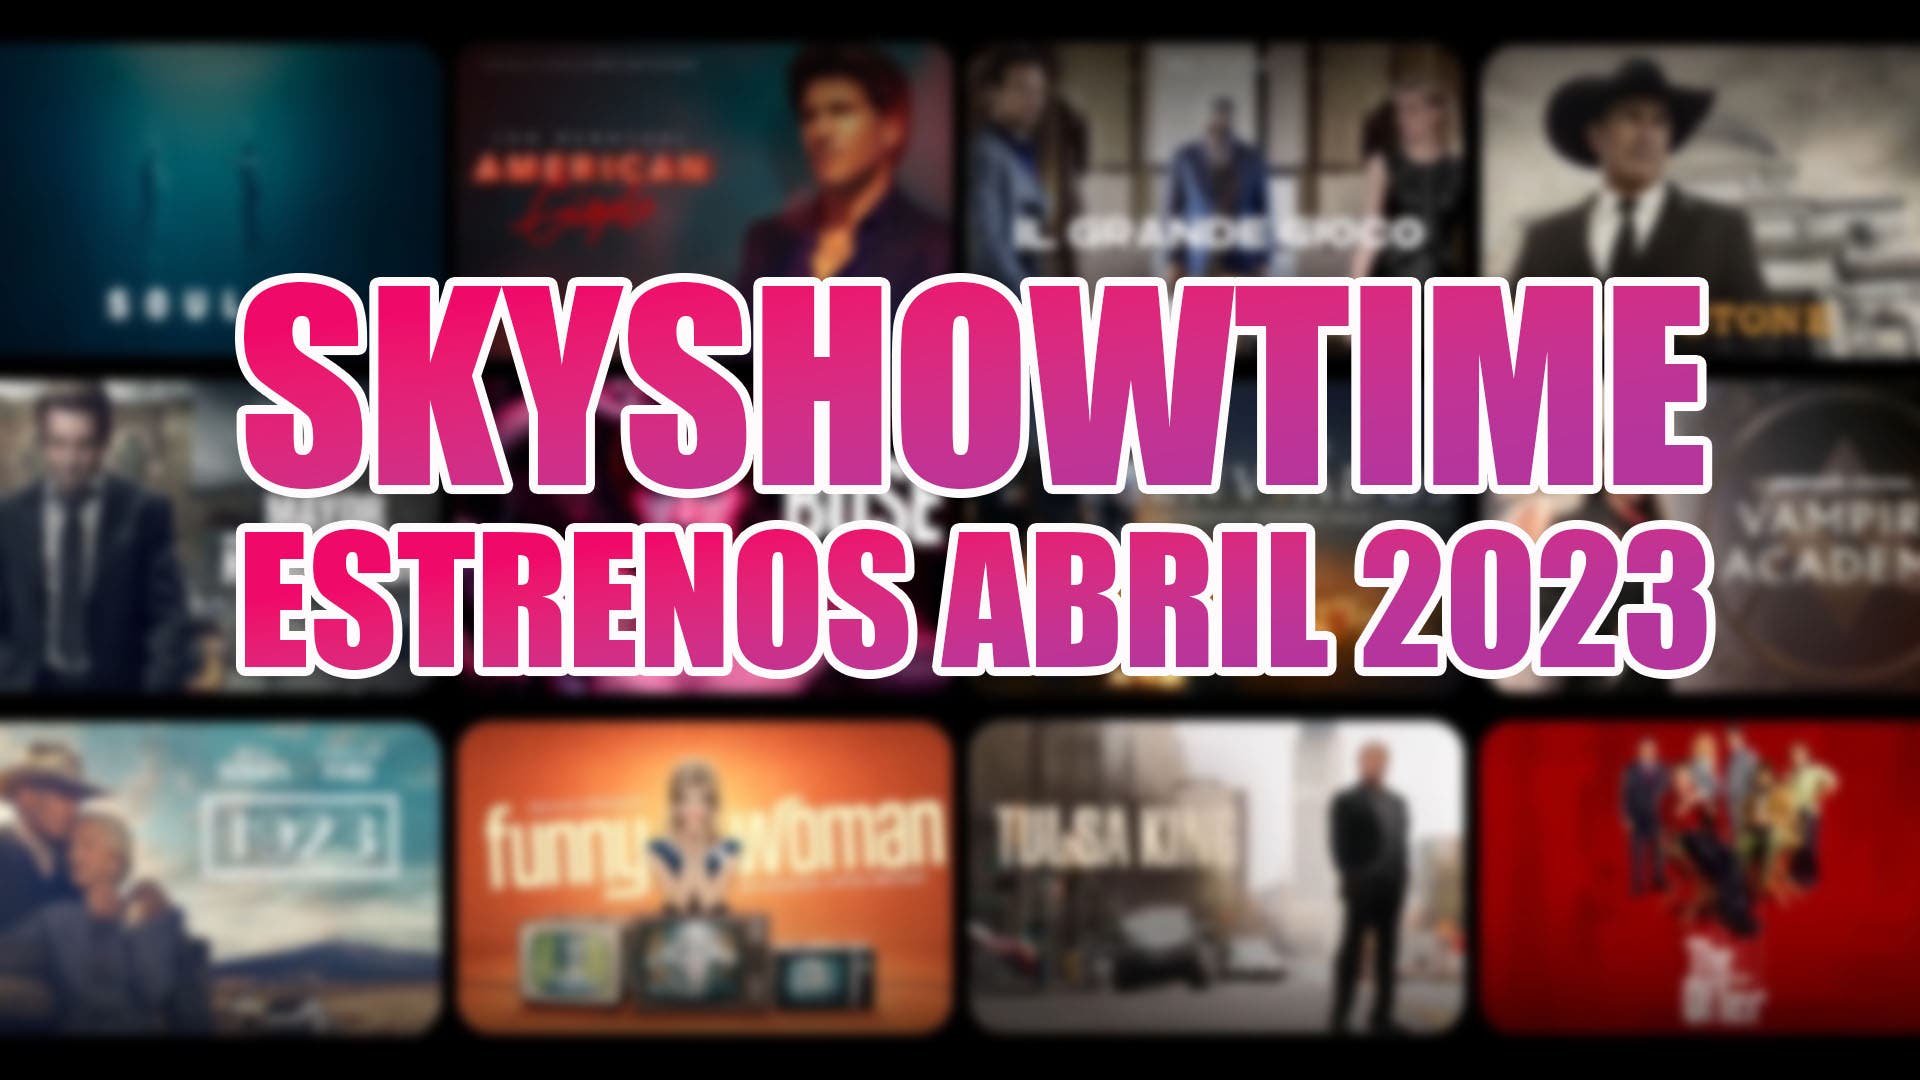 Top SkyShowtime April 2023 Premieres